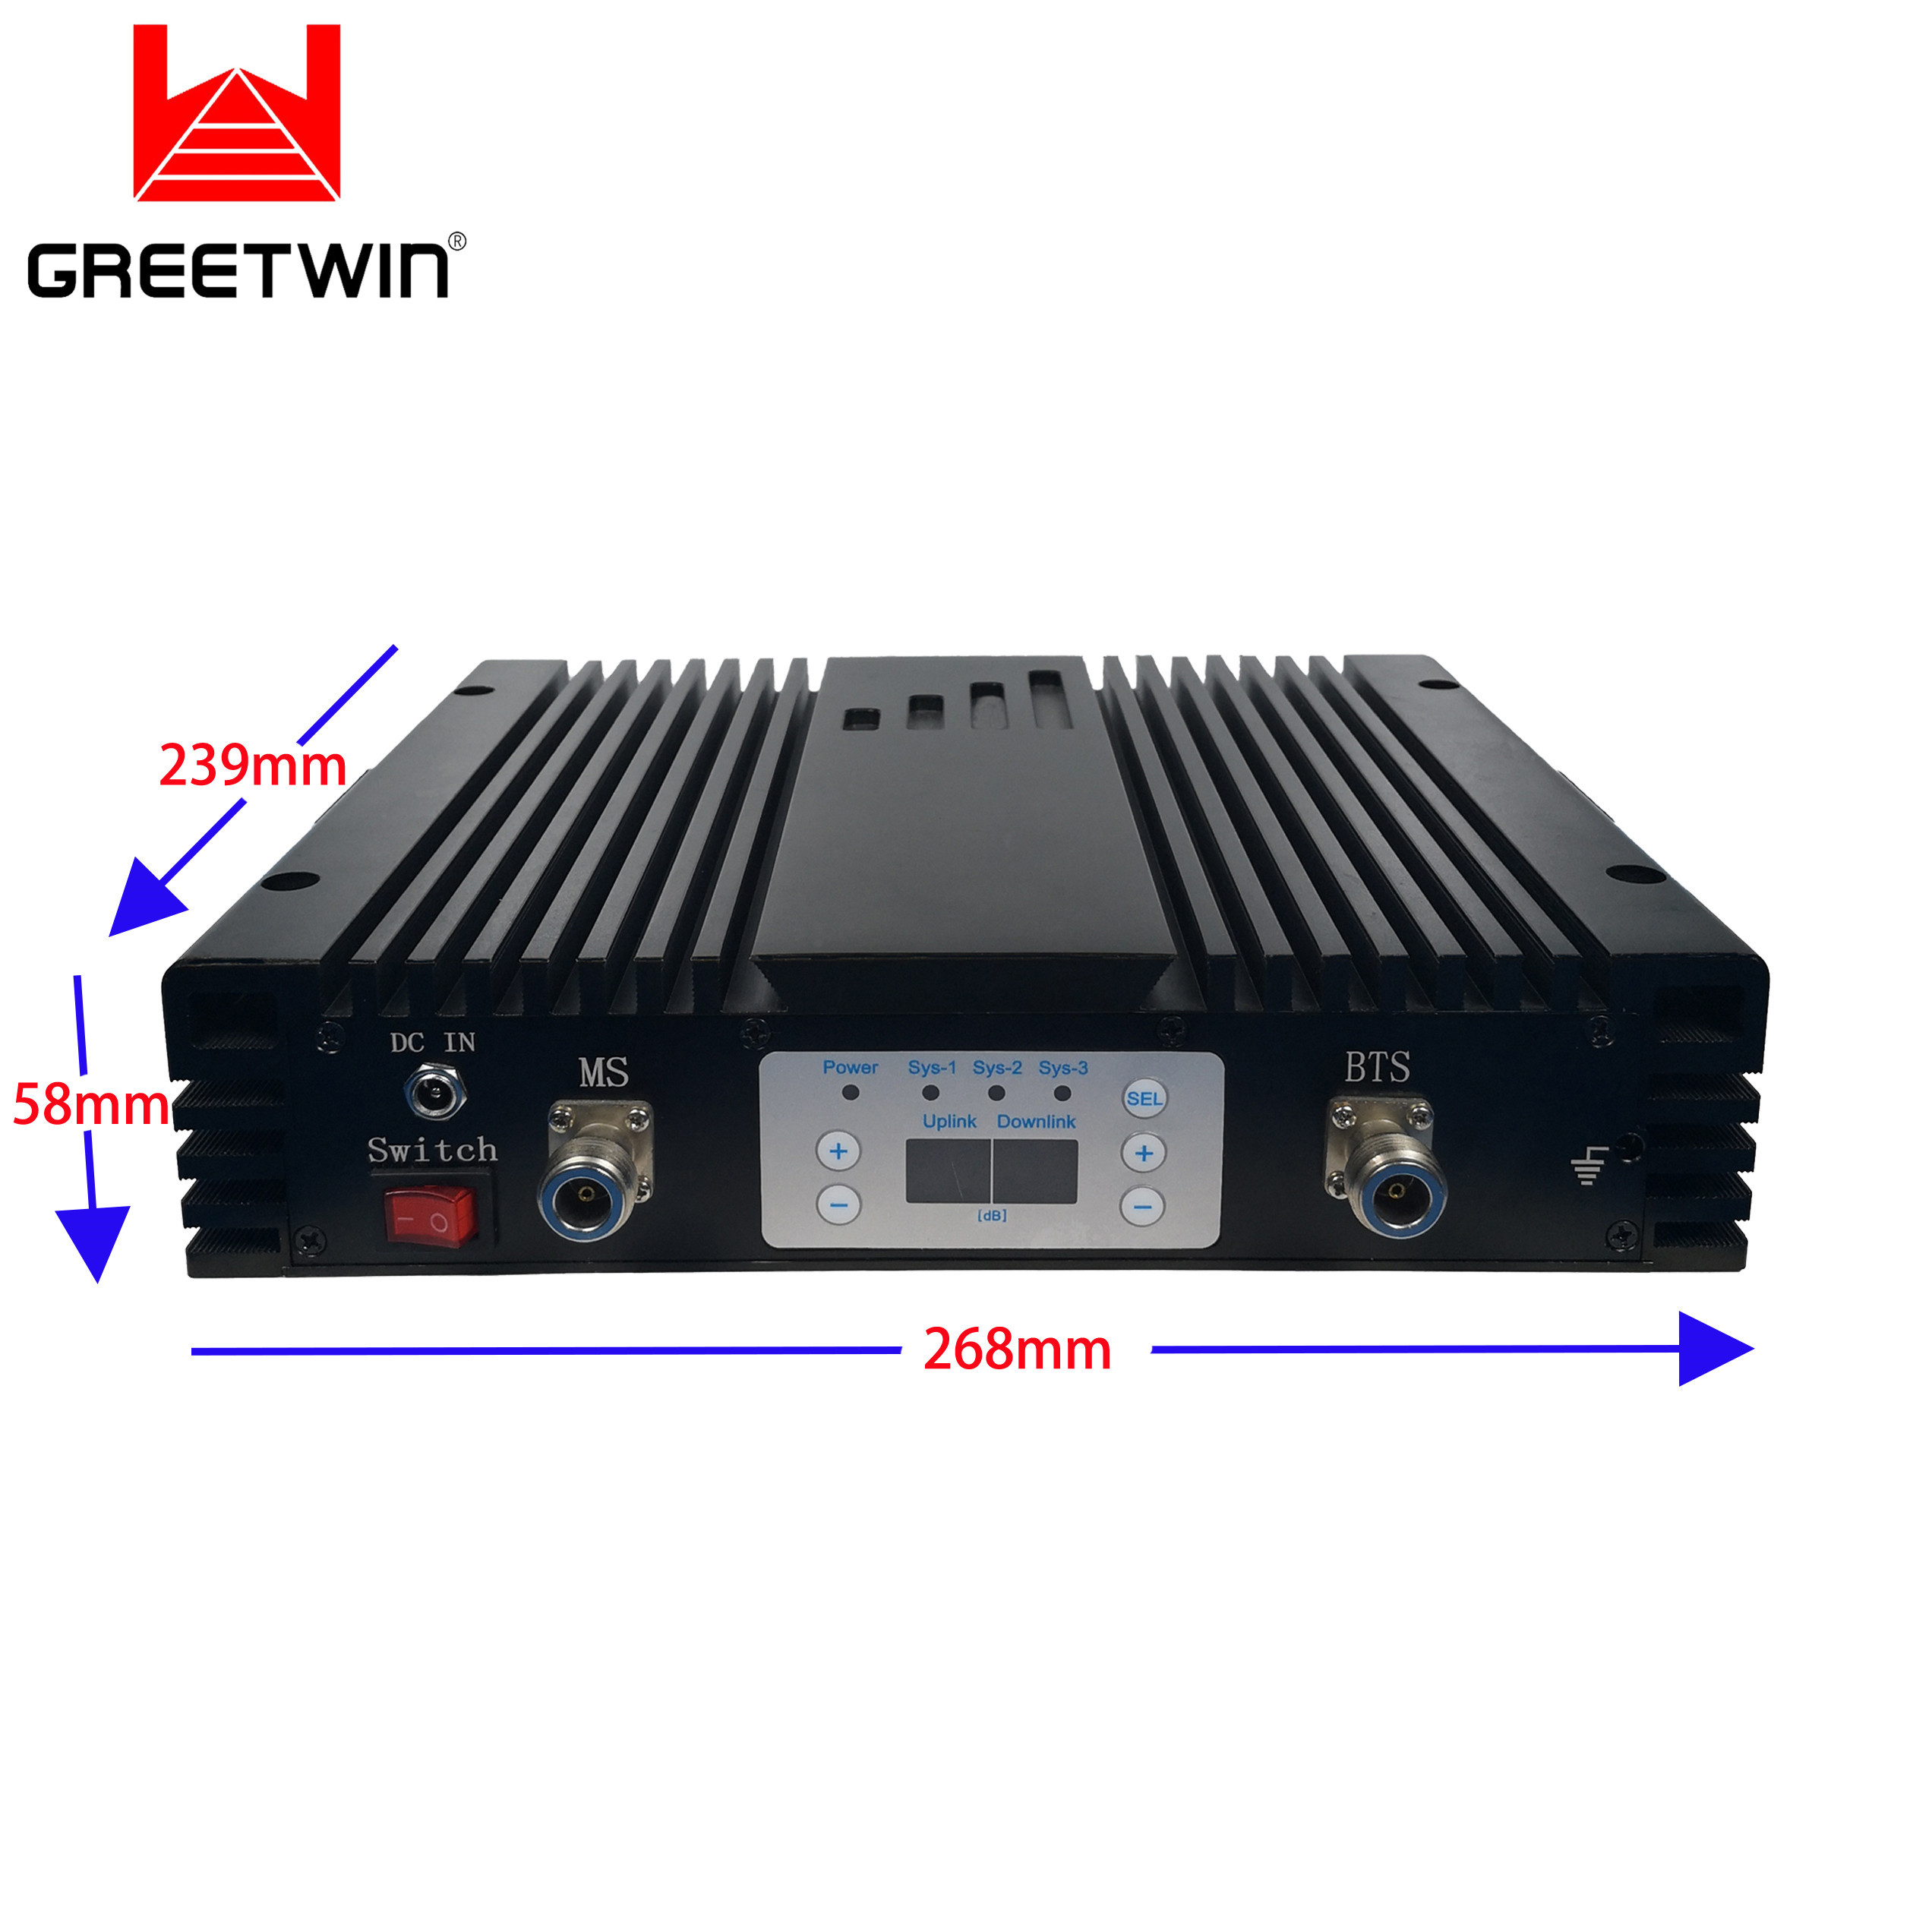 Repetidor de sinal móvel GSM850 27dBm PCS1900 AWS1700